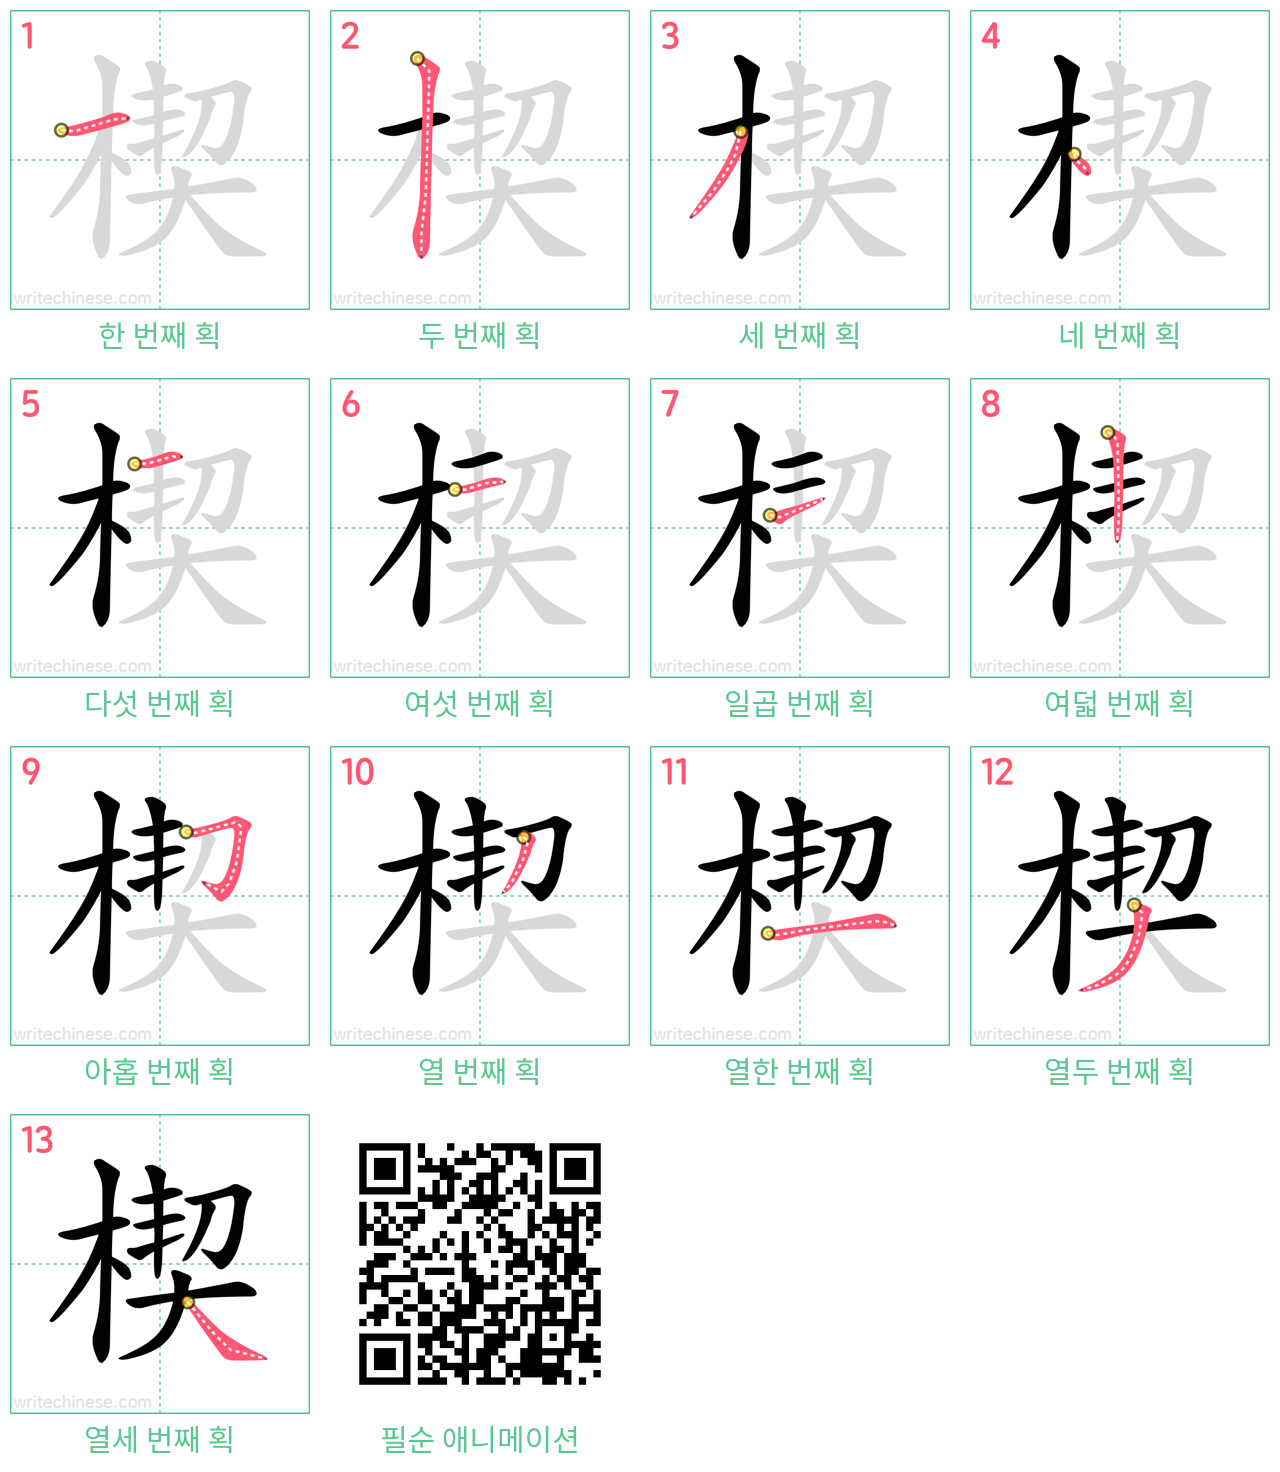 楔 step-by-step stroke order diagrams